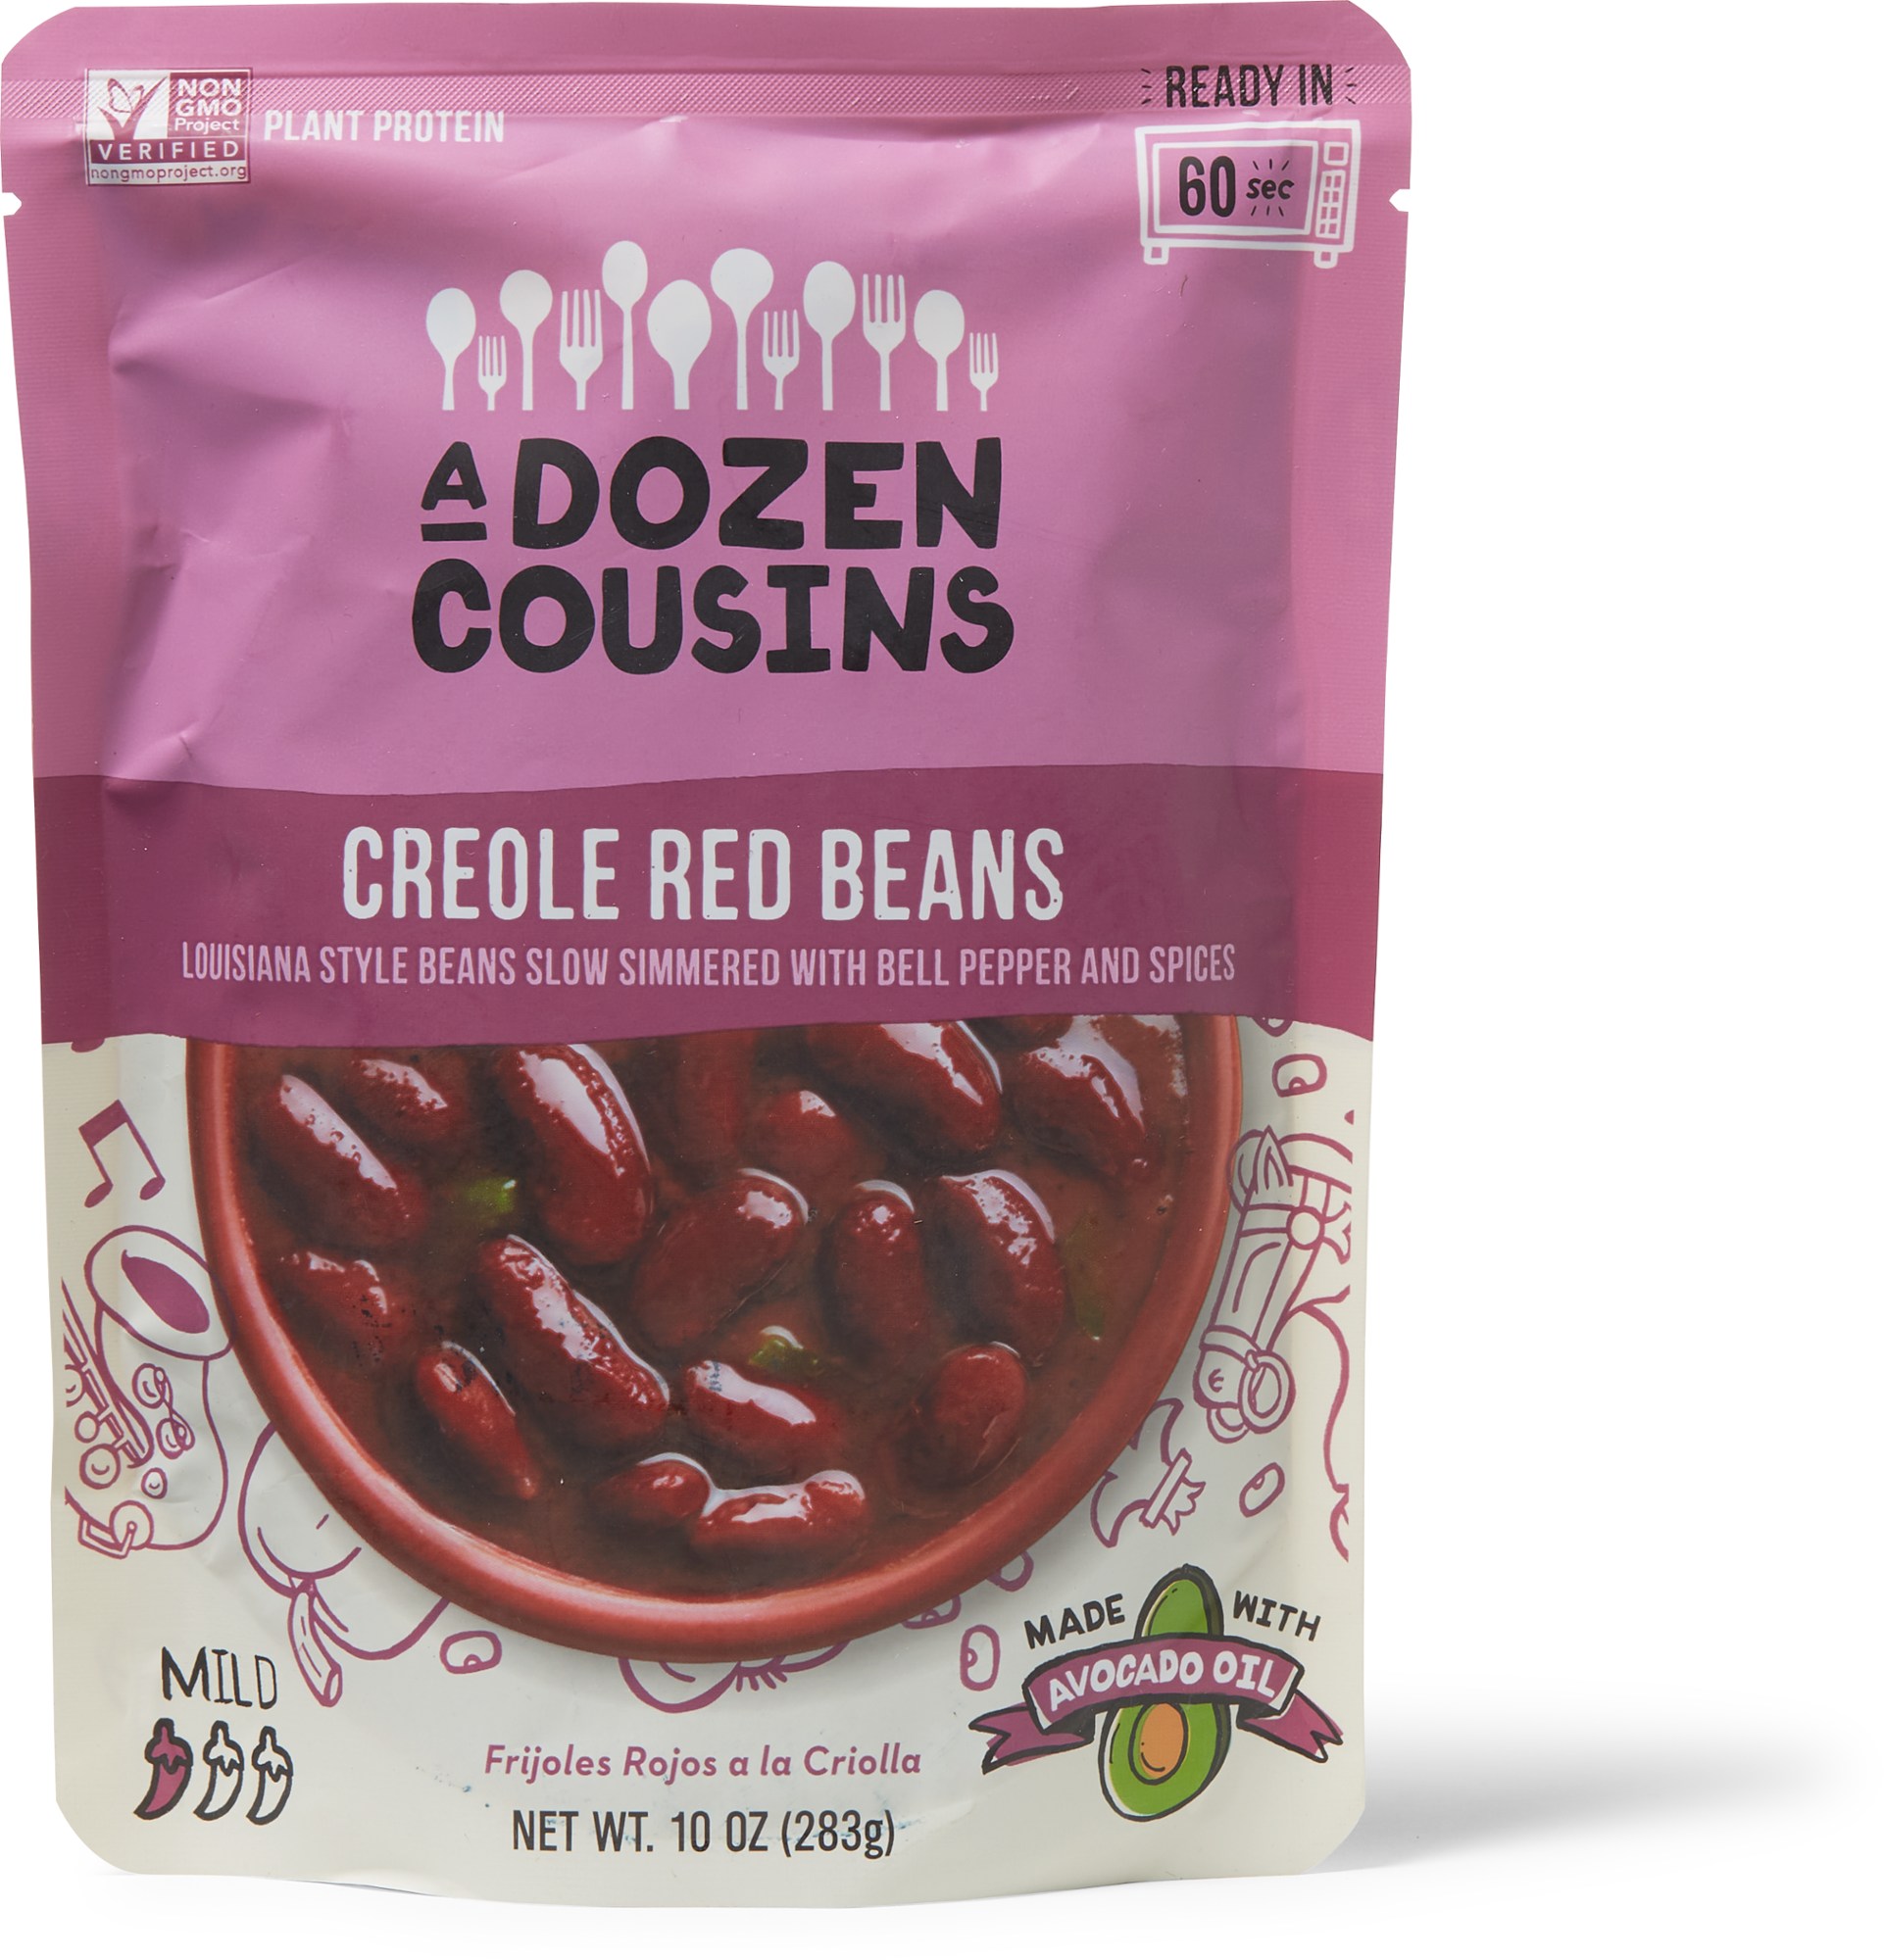 Приправленная фасоль — 2 порции A Dozen Cousins